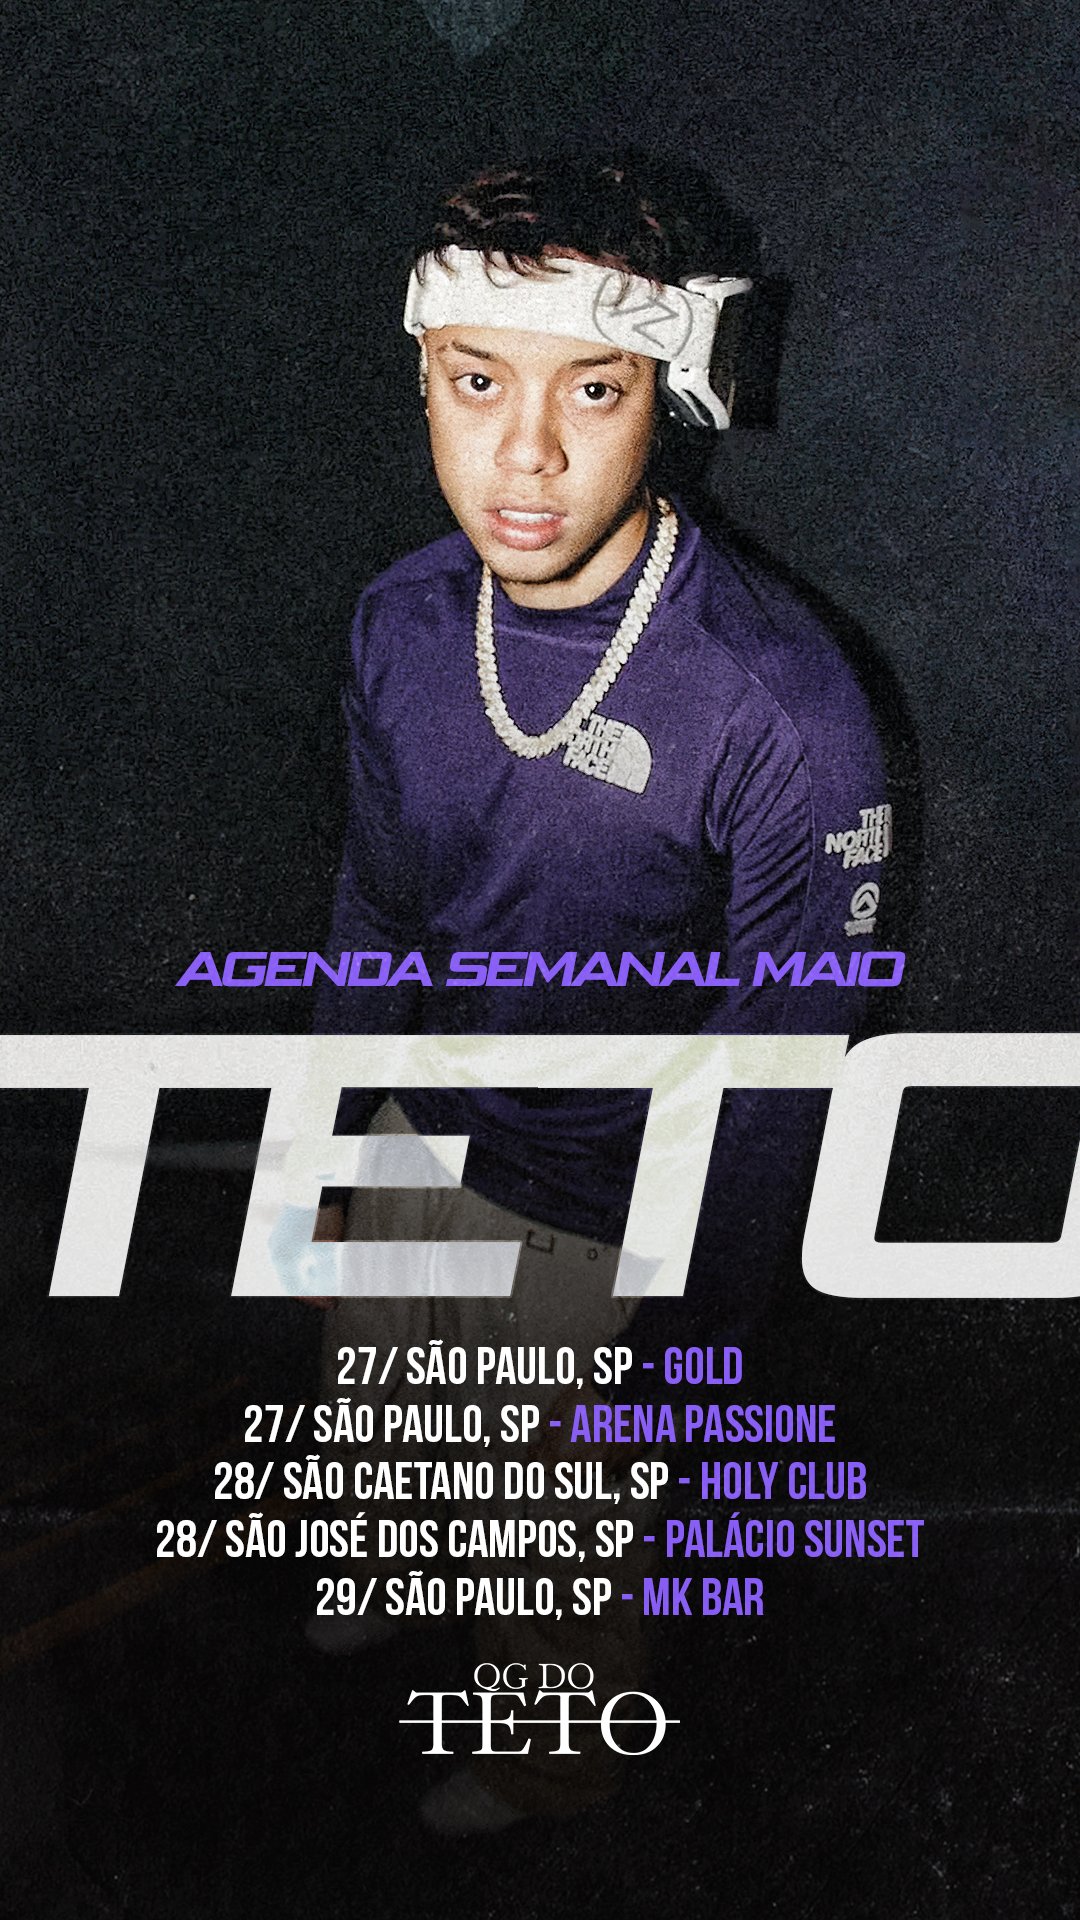 QG do Teto on X: Agenda de shows da semana!  / X